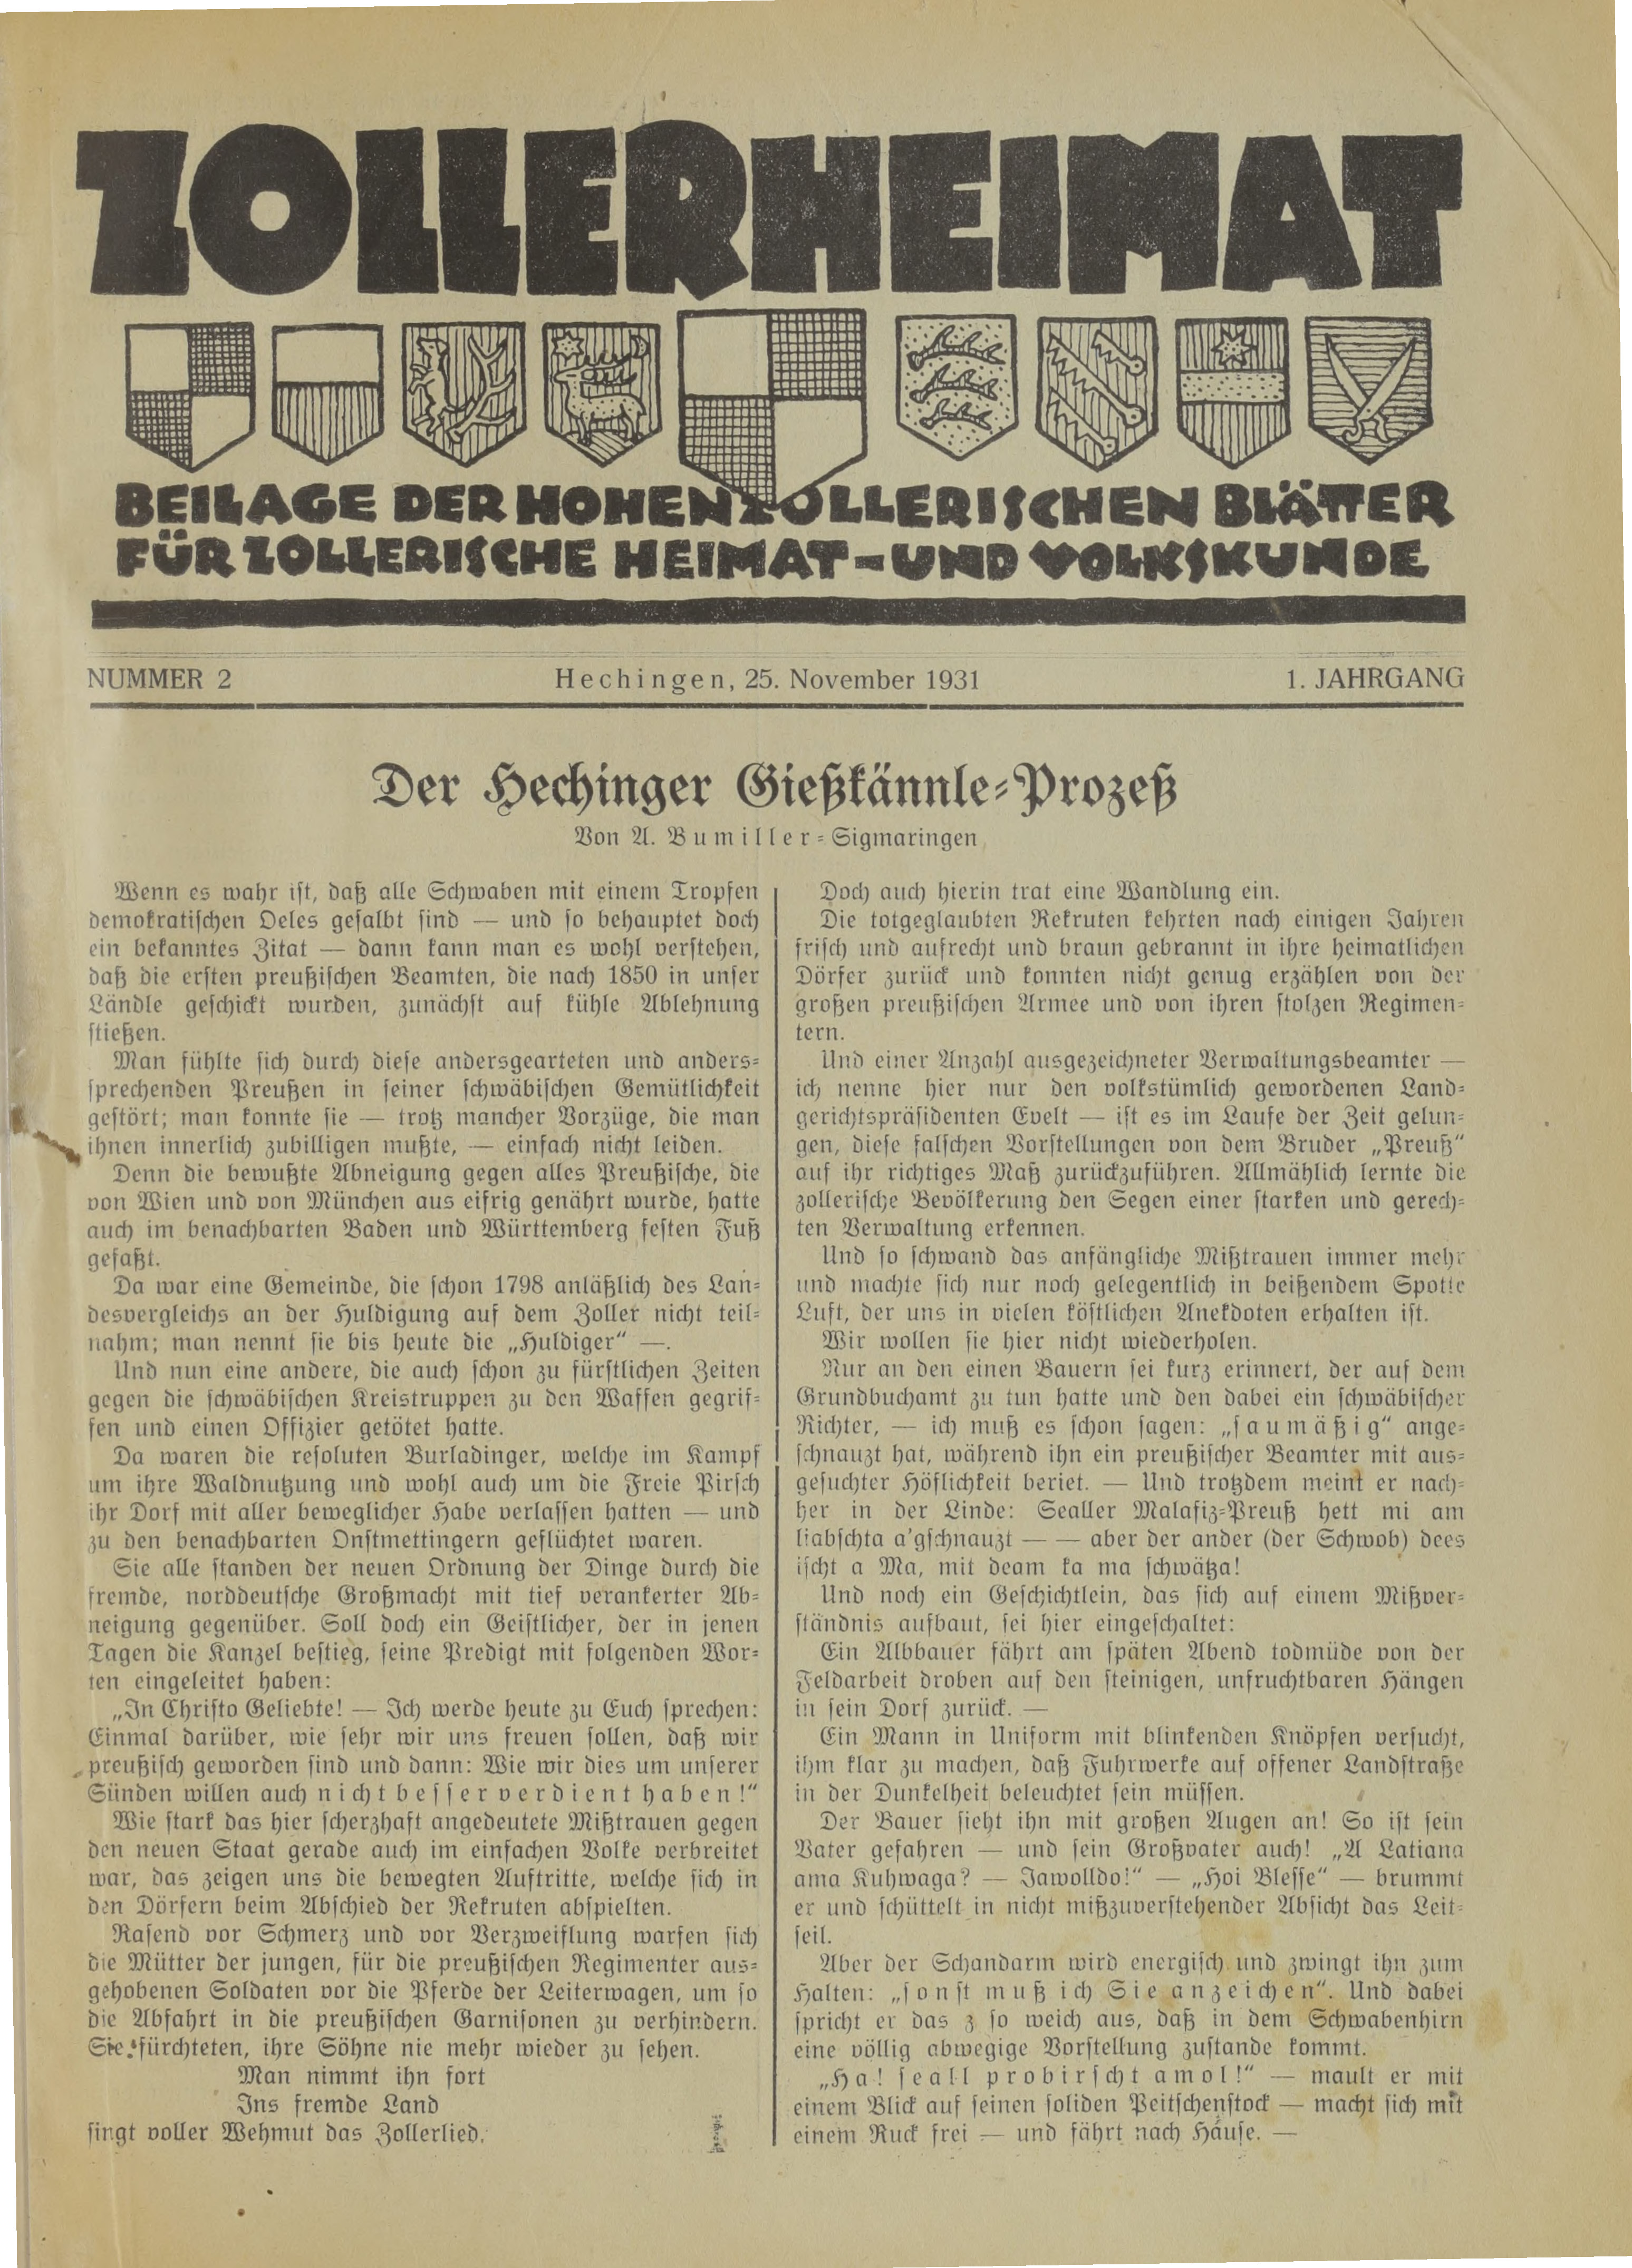                     Ansehen Bd. 1 Nr. 2 (1931): Zollerheimat
                